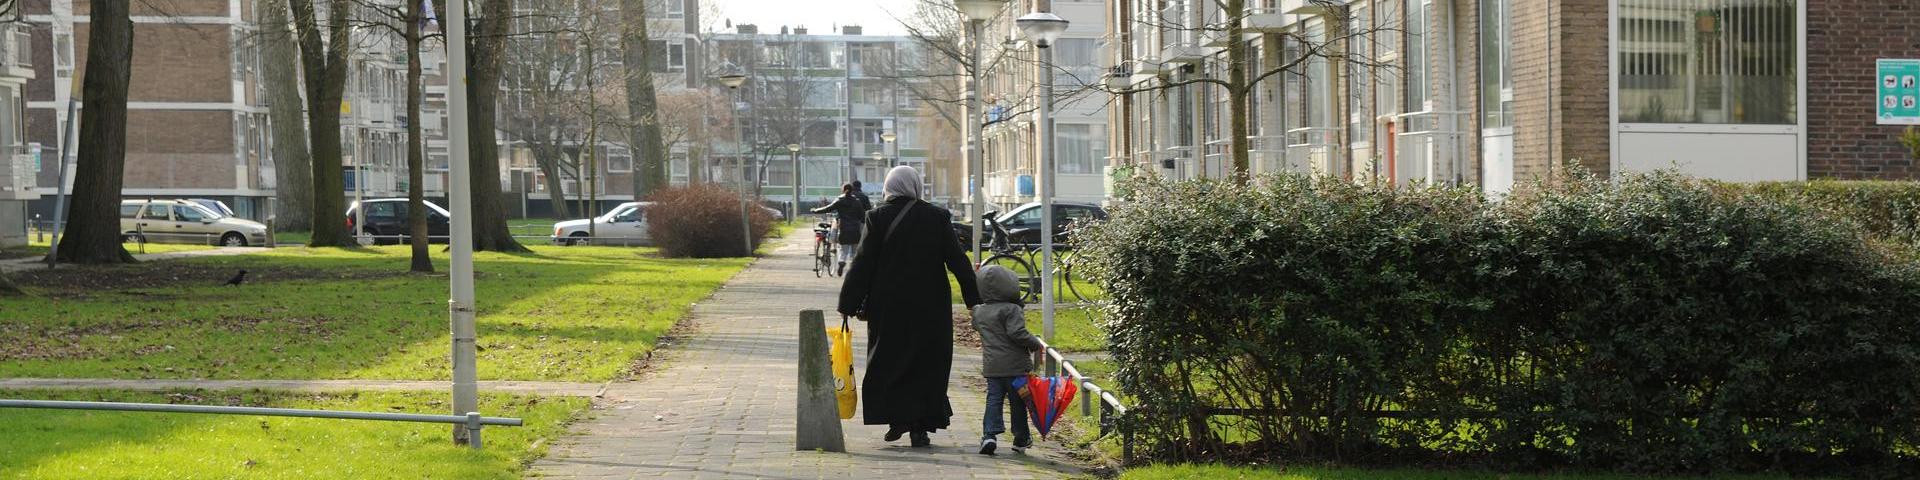 Een vrouw en een kind lopen door een aandachtswijk.